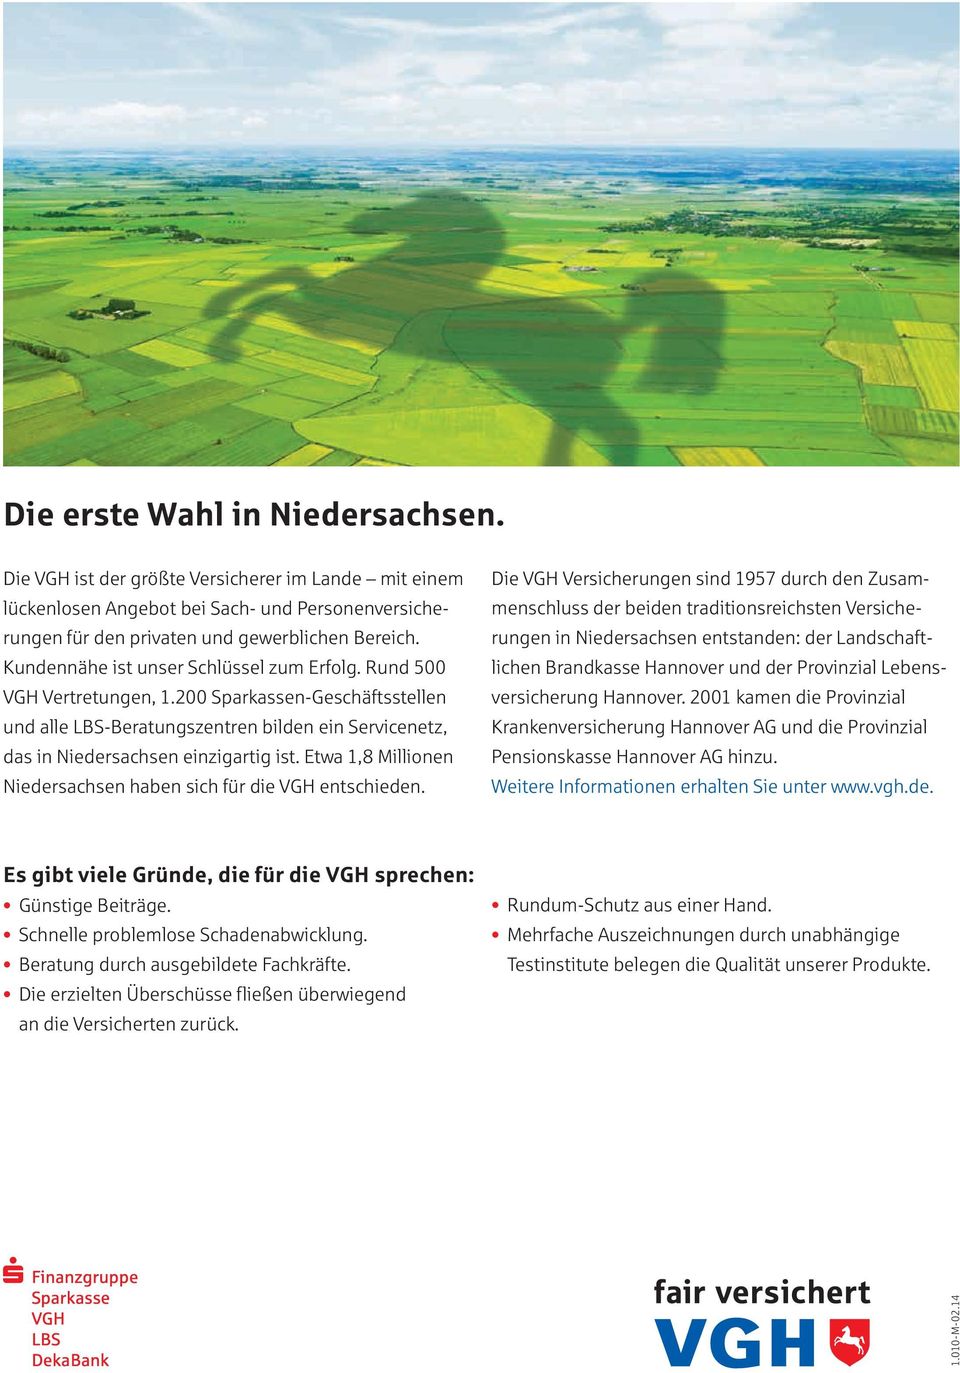 Etwa 1,8 Millionen Niedersachsen haben sich für die VGH entschieden.